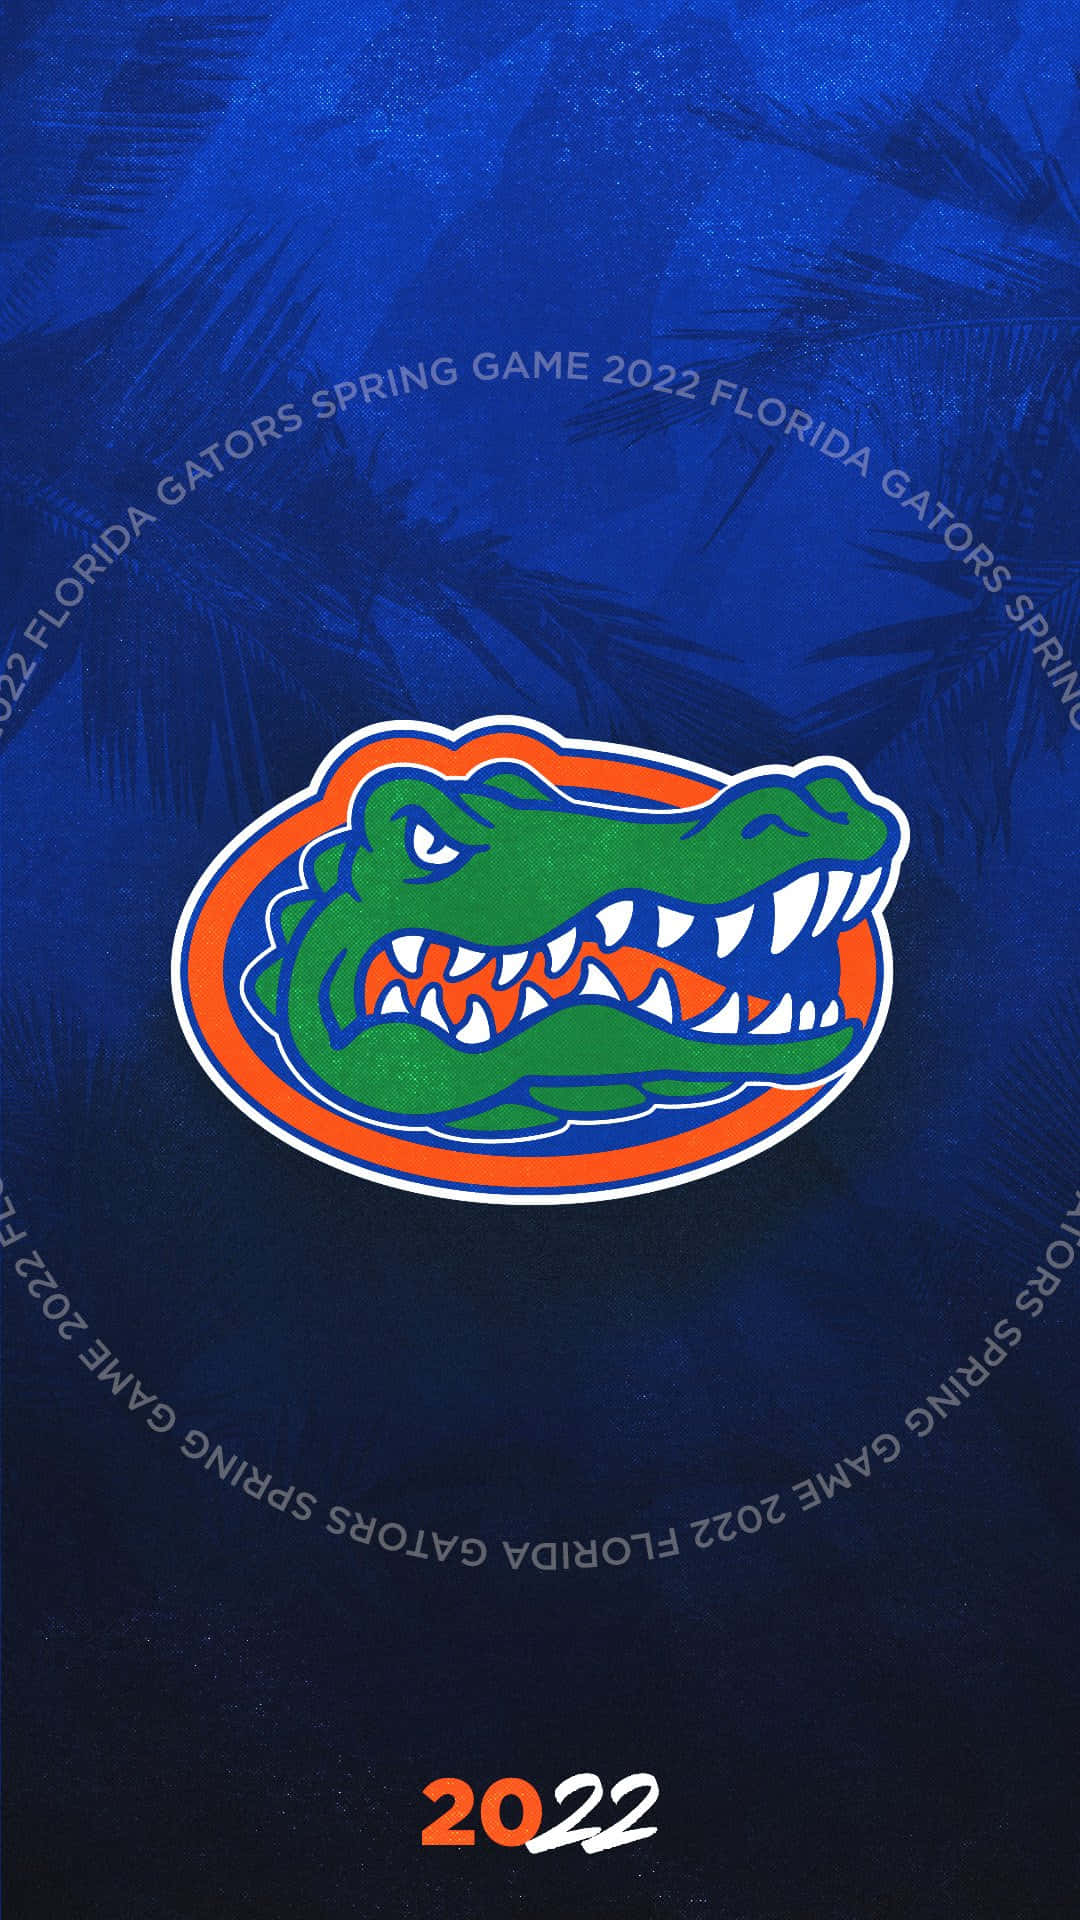 Floridas Gators 2020 forår spill logo Wallpaper